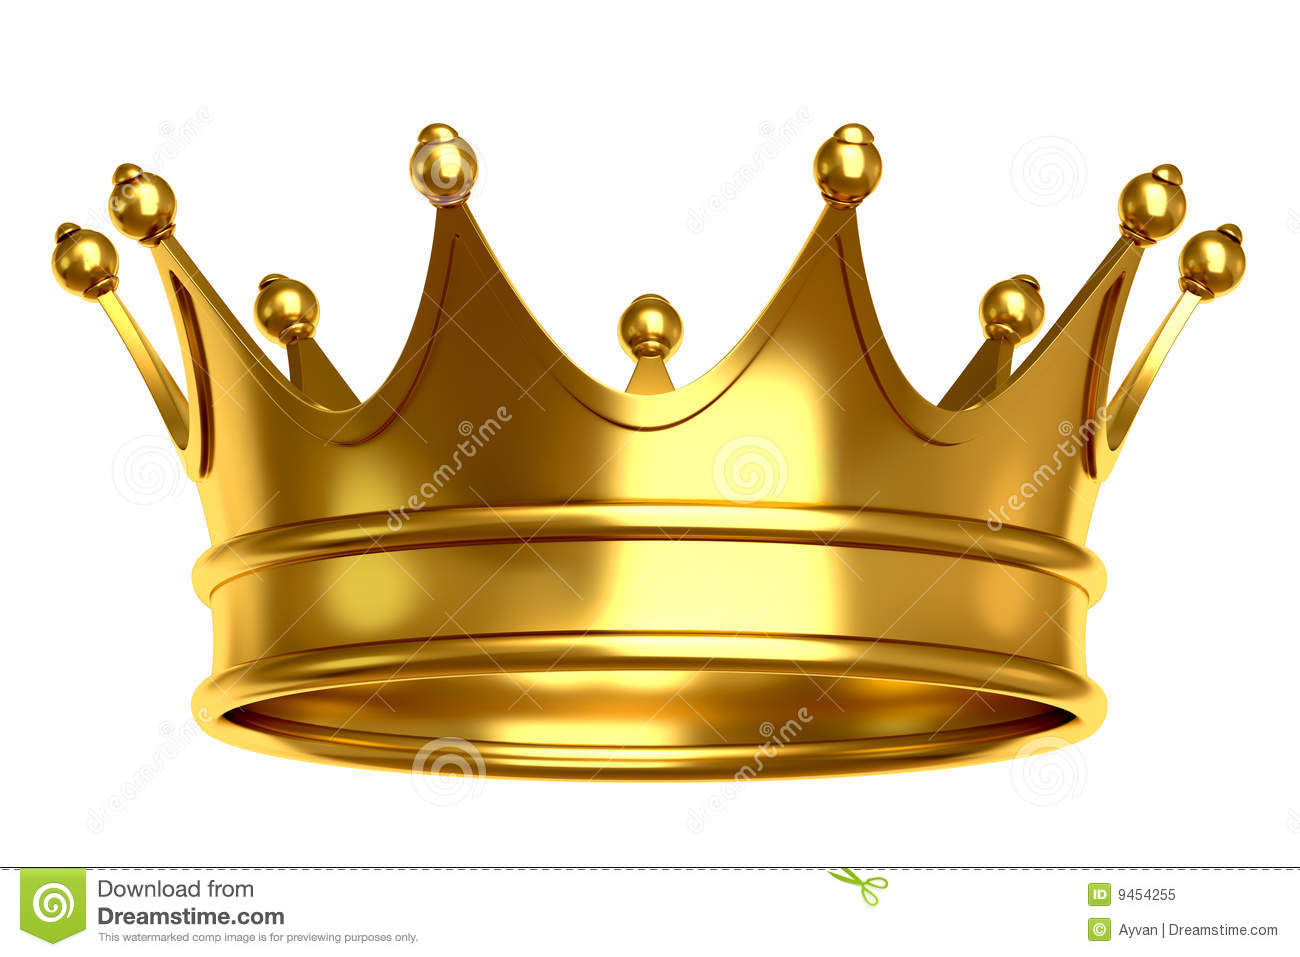 crown image #1